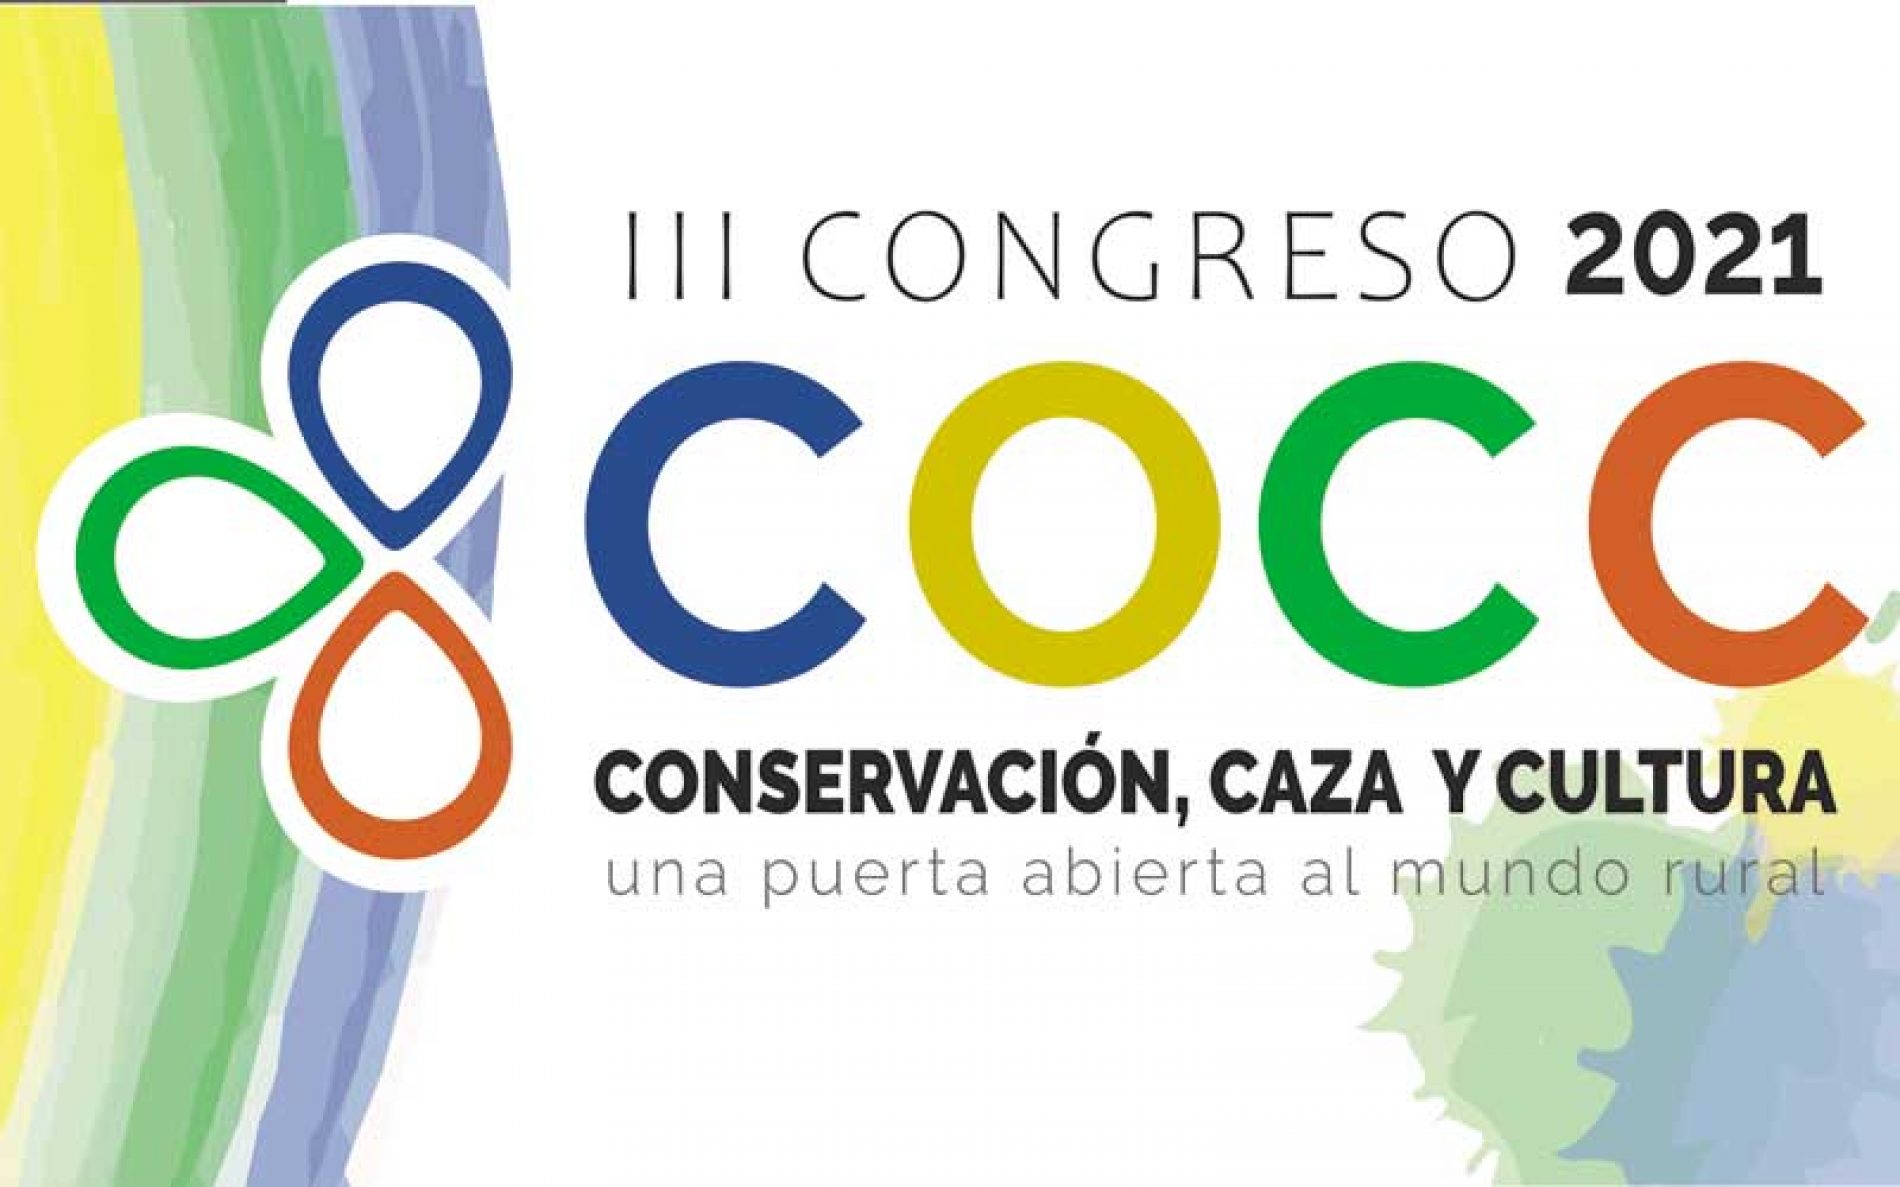 El III Congreso de Conservación, Caza y Cultura incluirá una sesión de pósteres científicos y técnicos